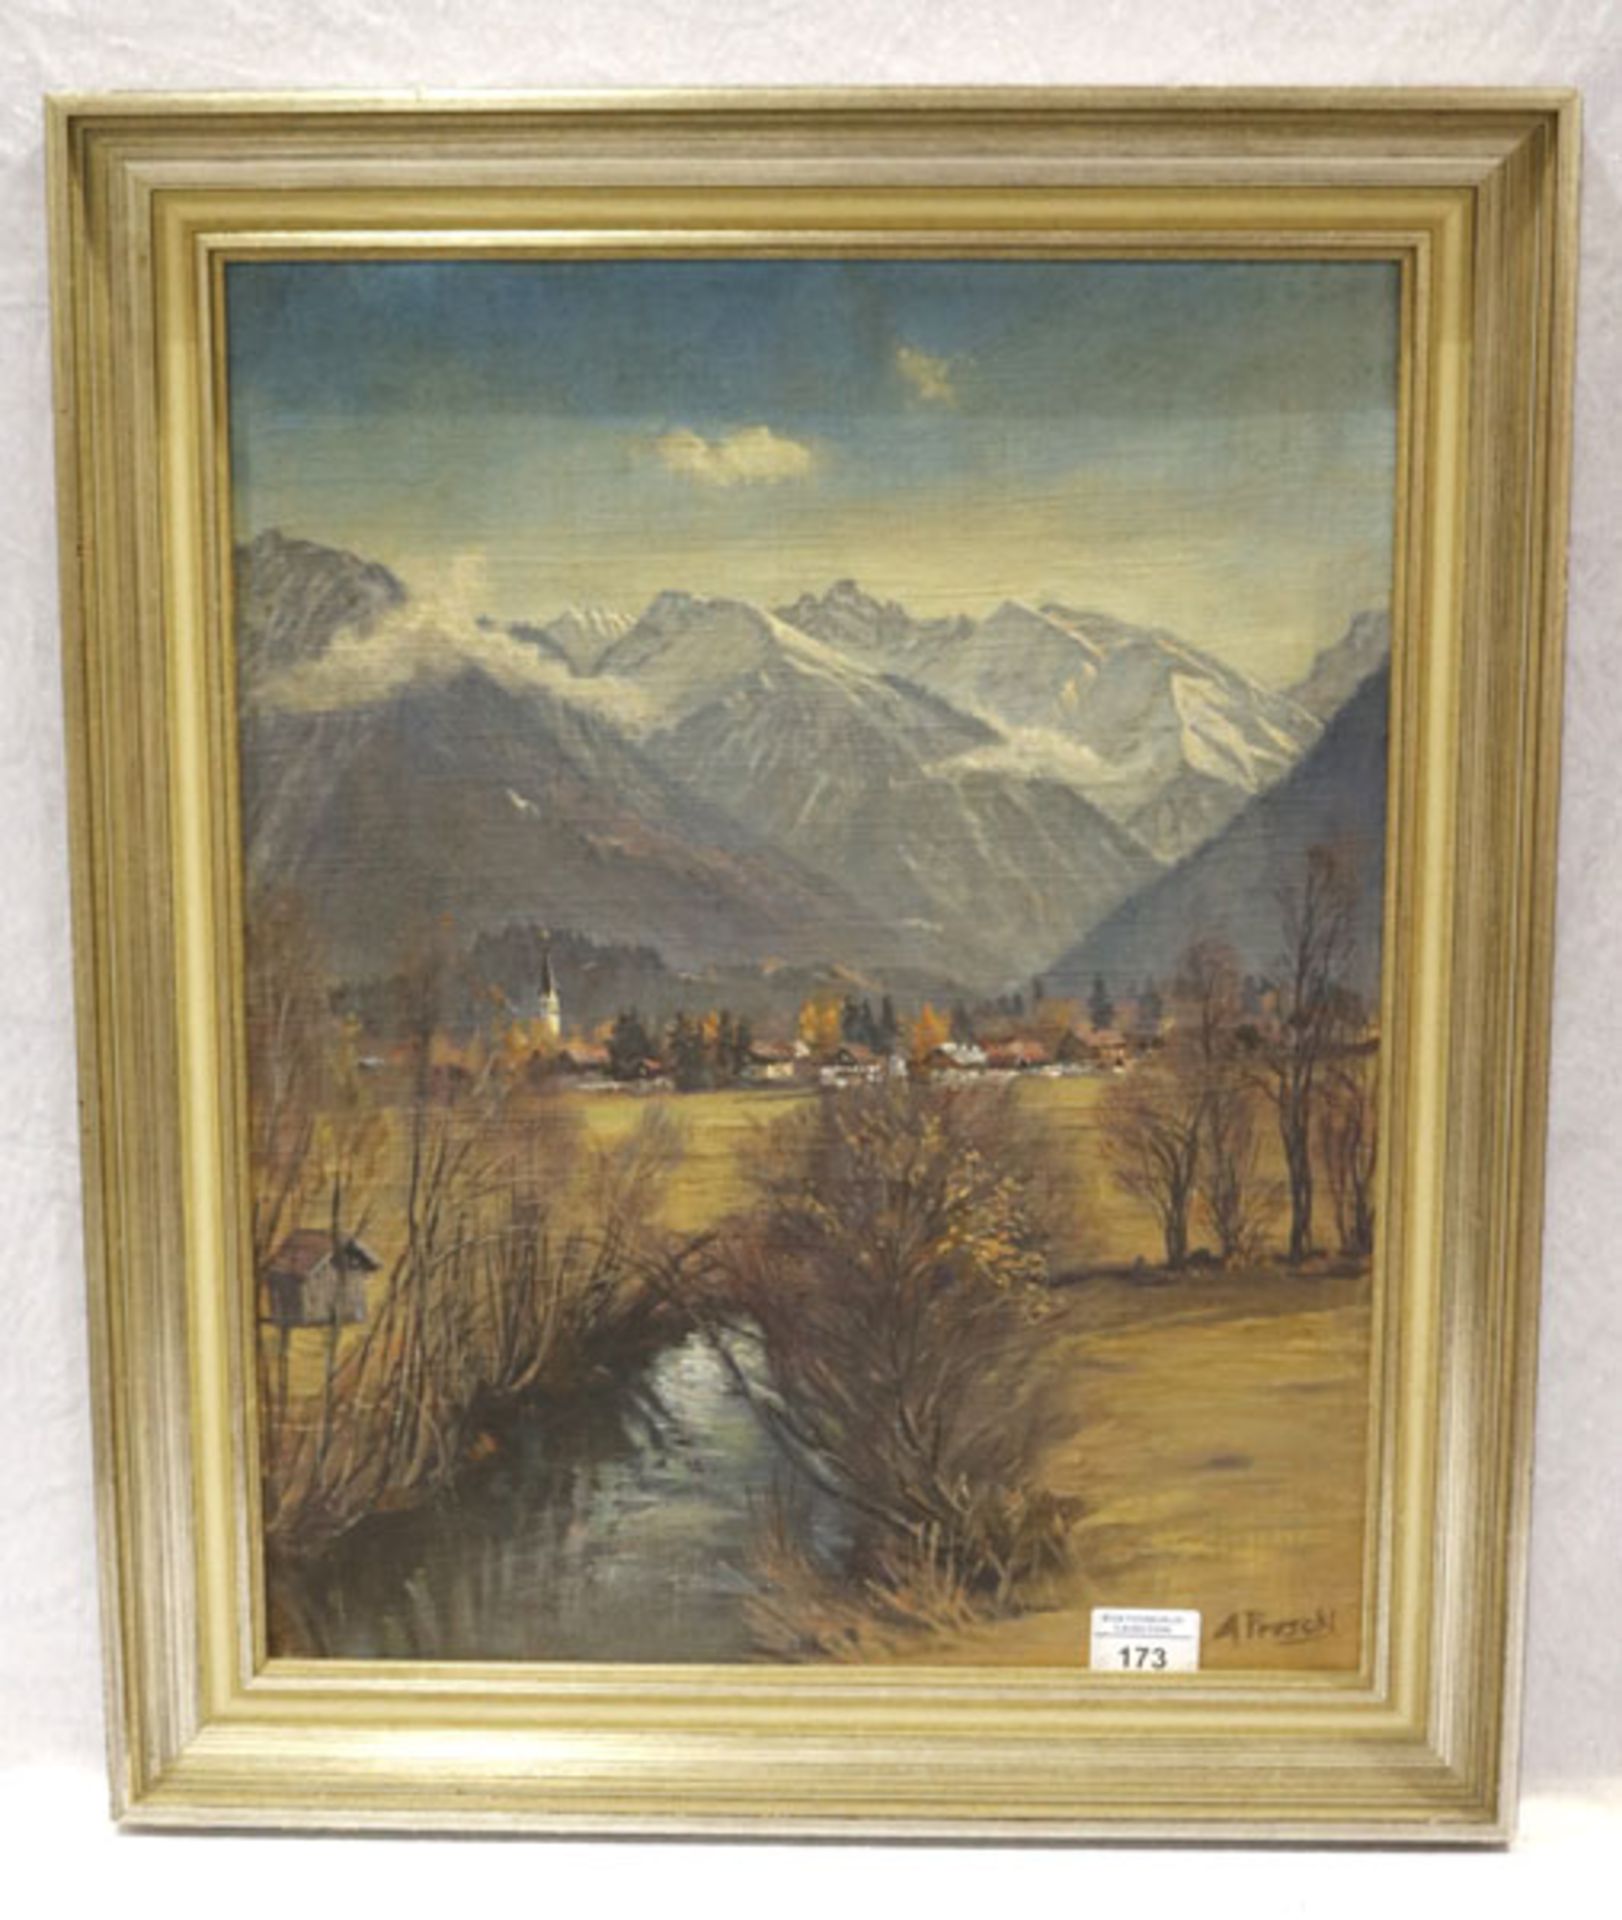 Gemälde ÖL/Hartfaser 'Dorf vor Hochgebirge', signiert A. Preschl, gerahmt Rahmen bestossen, incl.